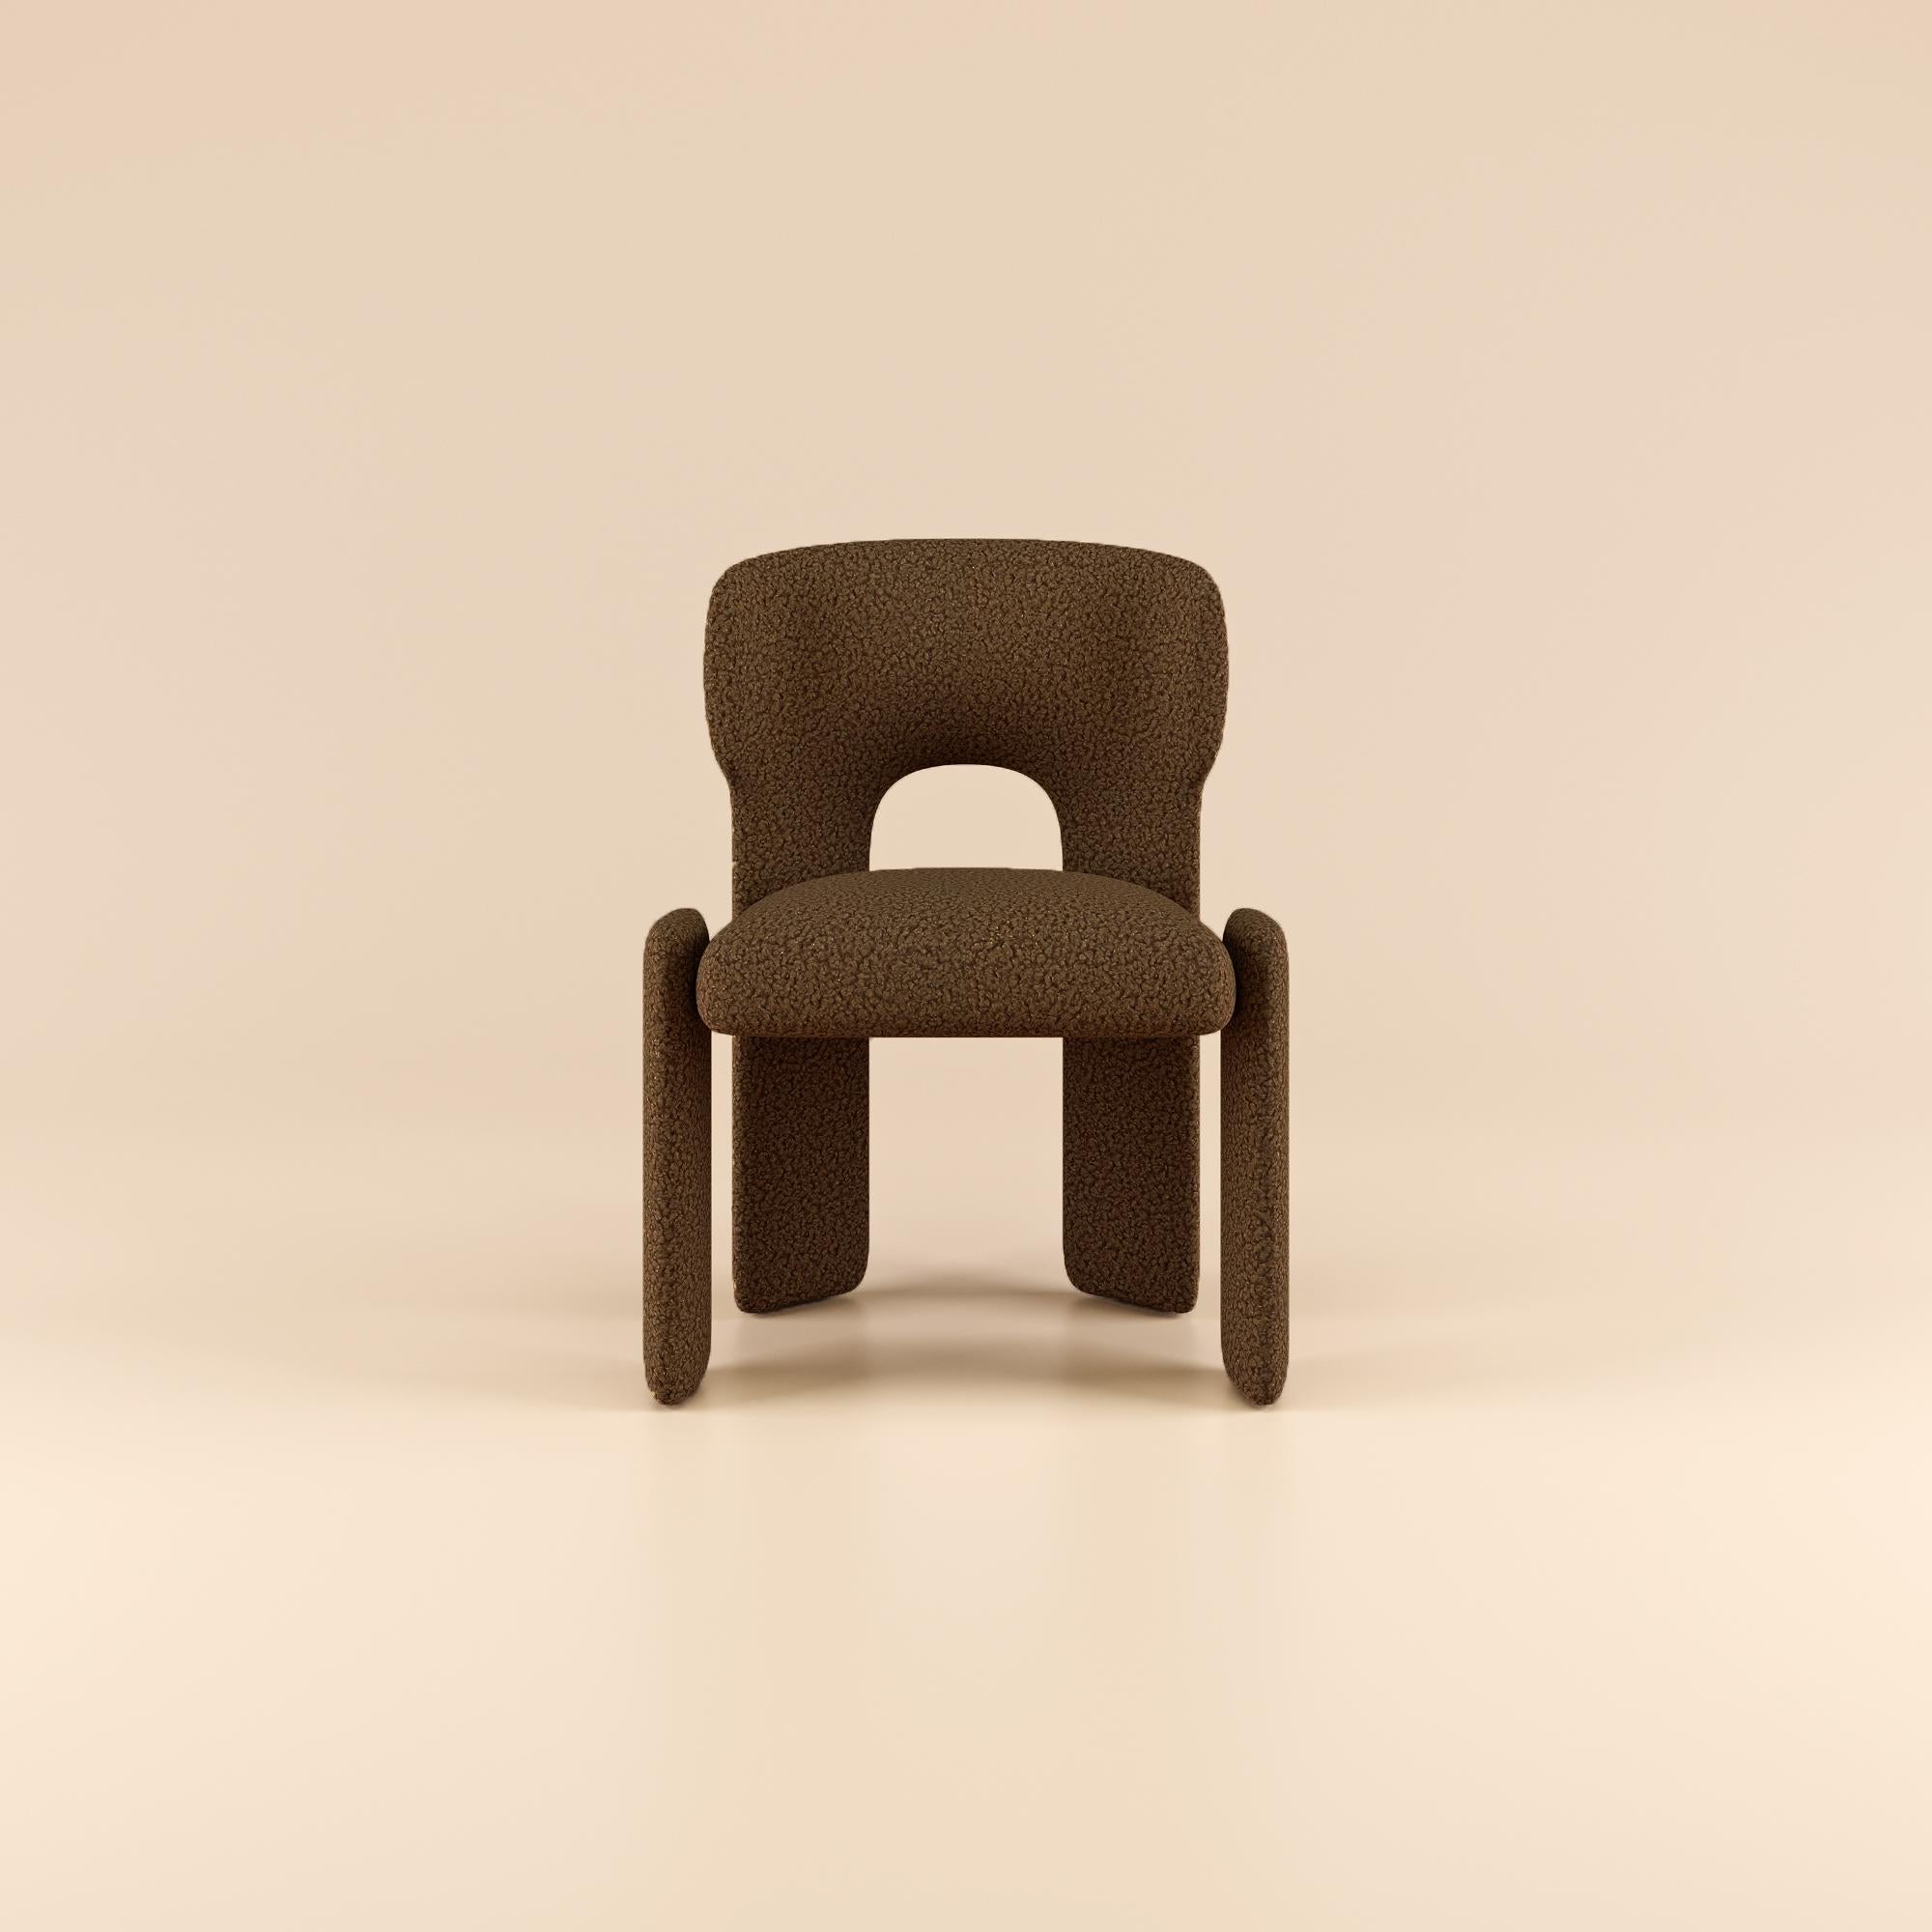 Témoignage d'un nouveau niveau de design moderne, la chaise de salle à manger Bold allie harmonieusement forme et fonction, rehaussant toute expérience culinaire par son élégance raffinée.

Des décennies d'expertise en matière de conception